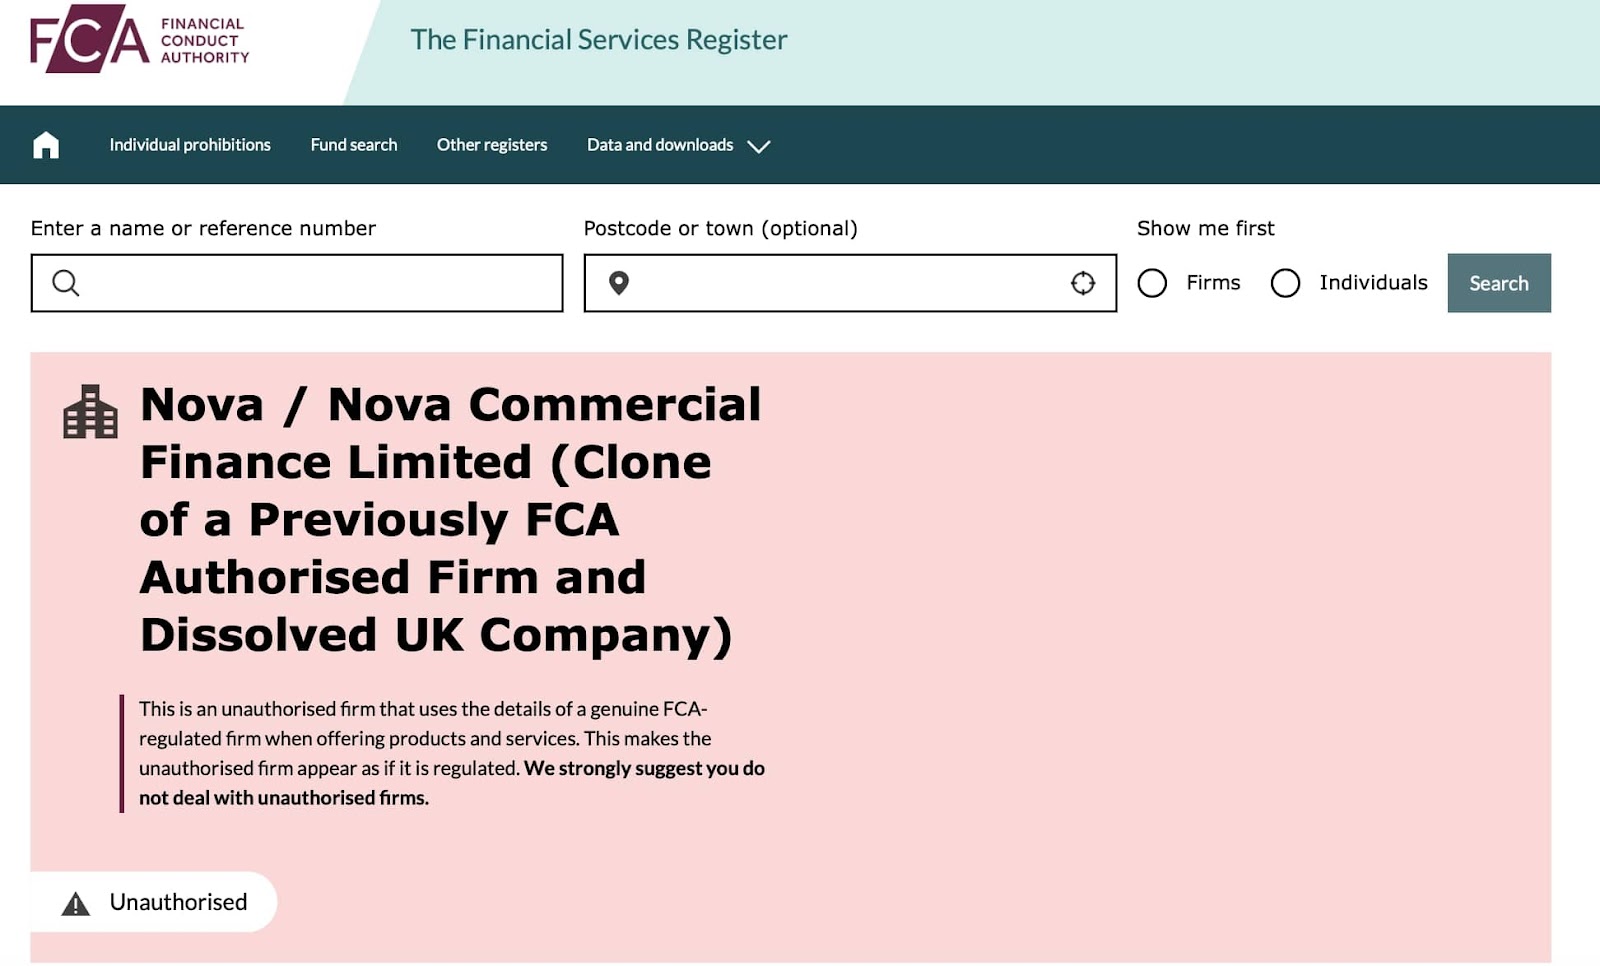 Nova Commercial Finance: отзывы о работе компании в 2022 году